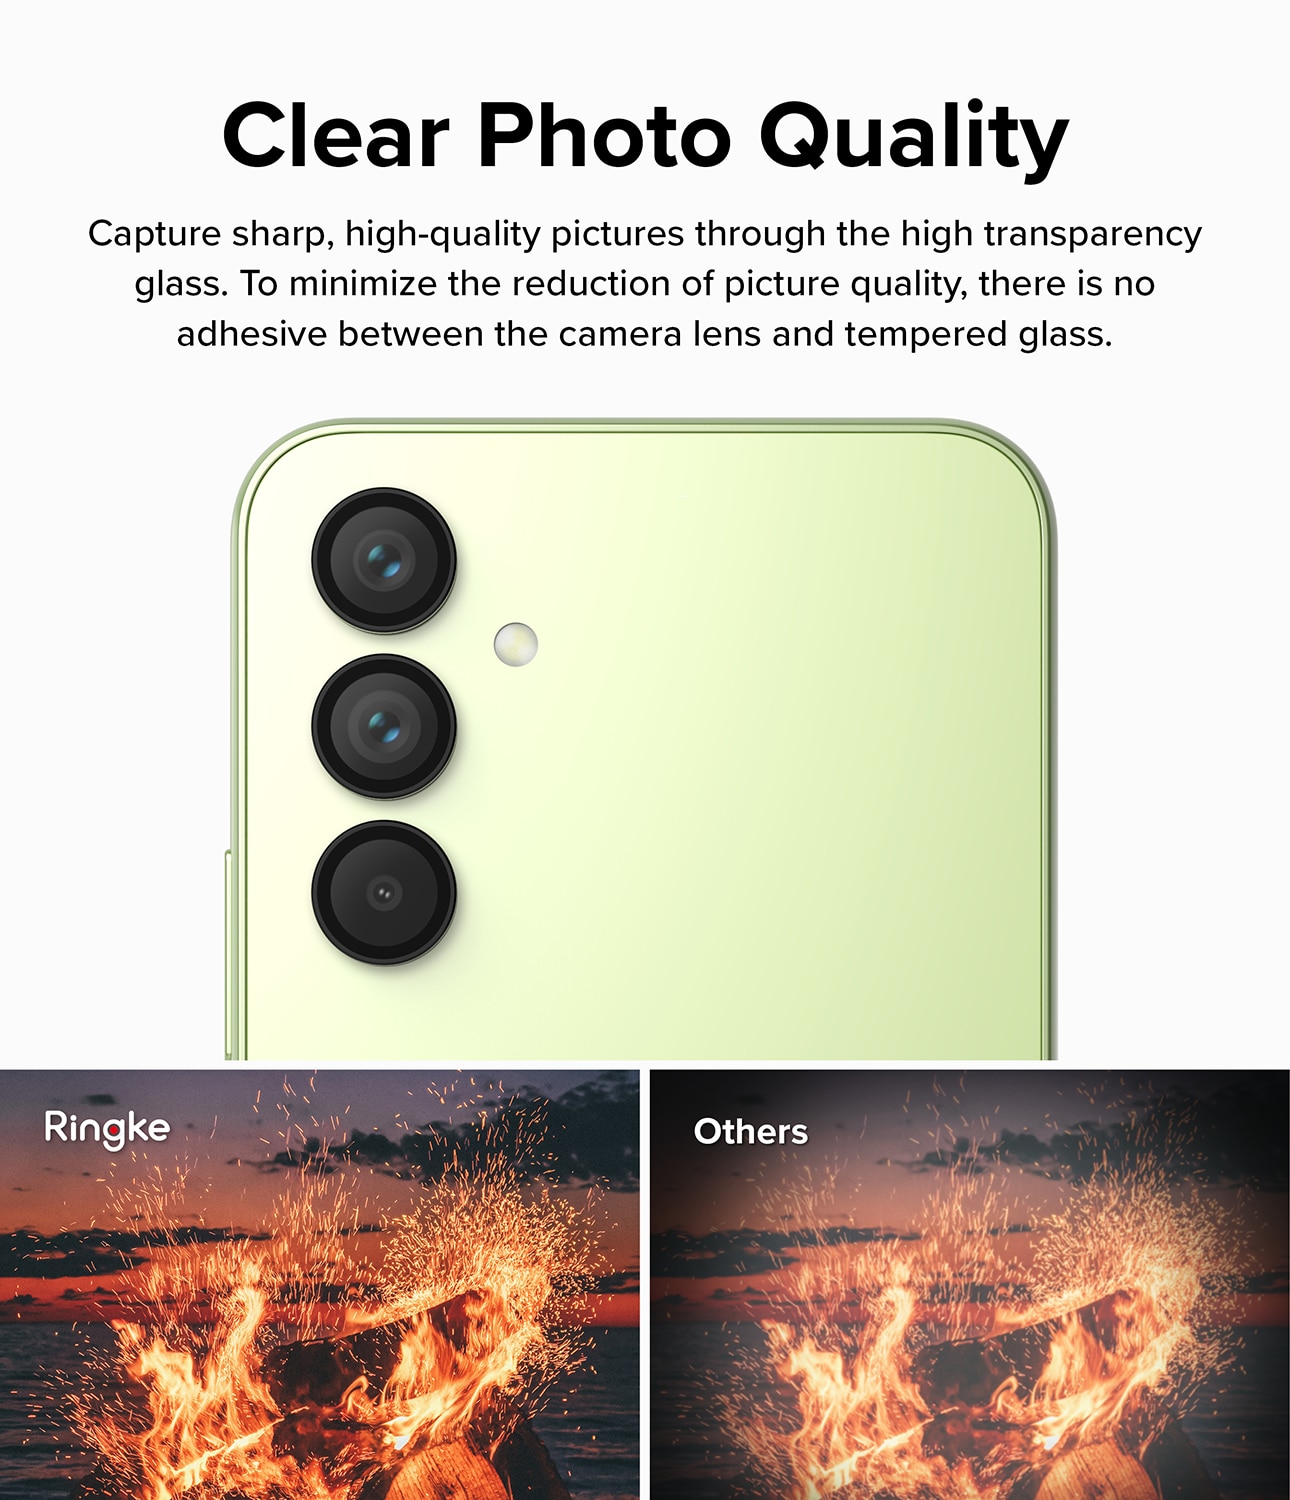 Samsung Galaxy A54 Camera Lens Frame Glass Black